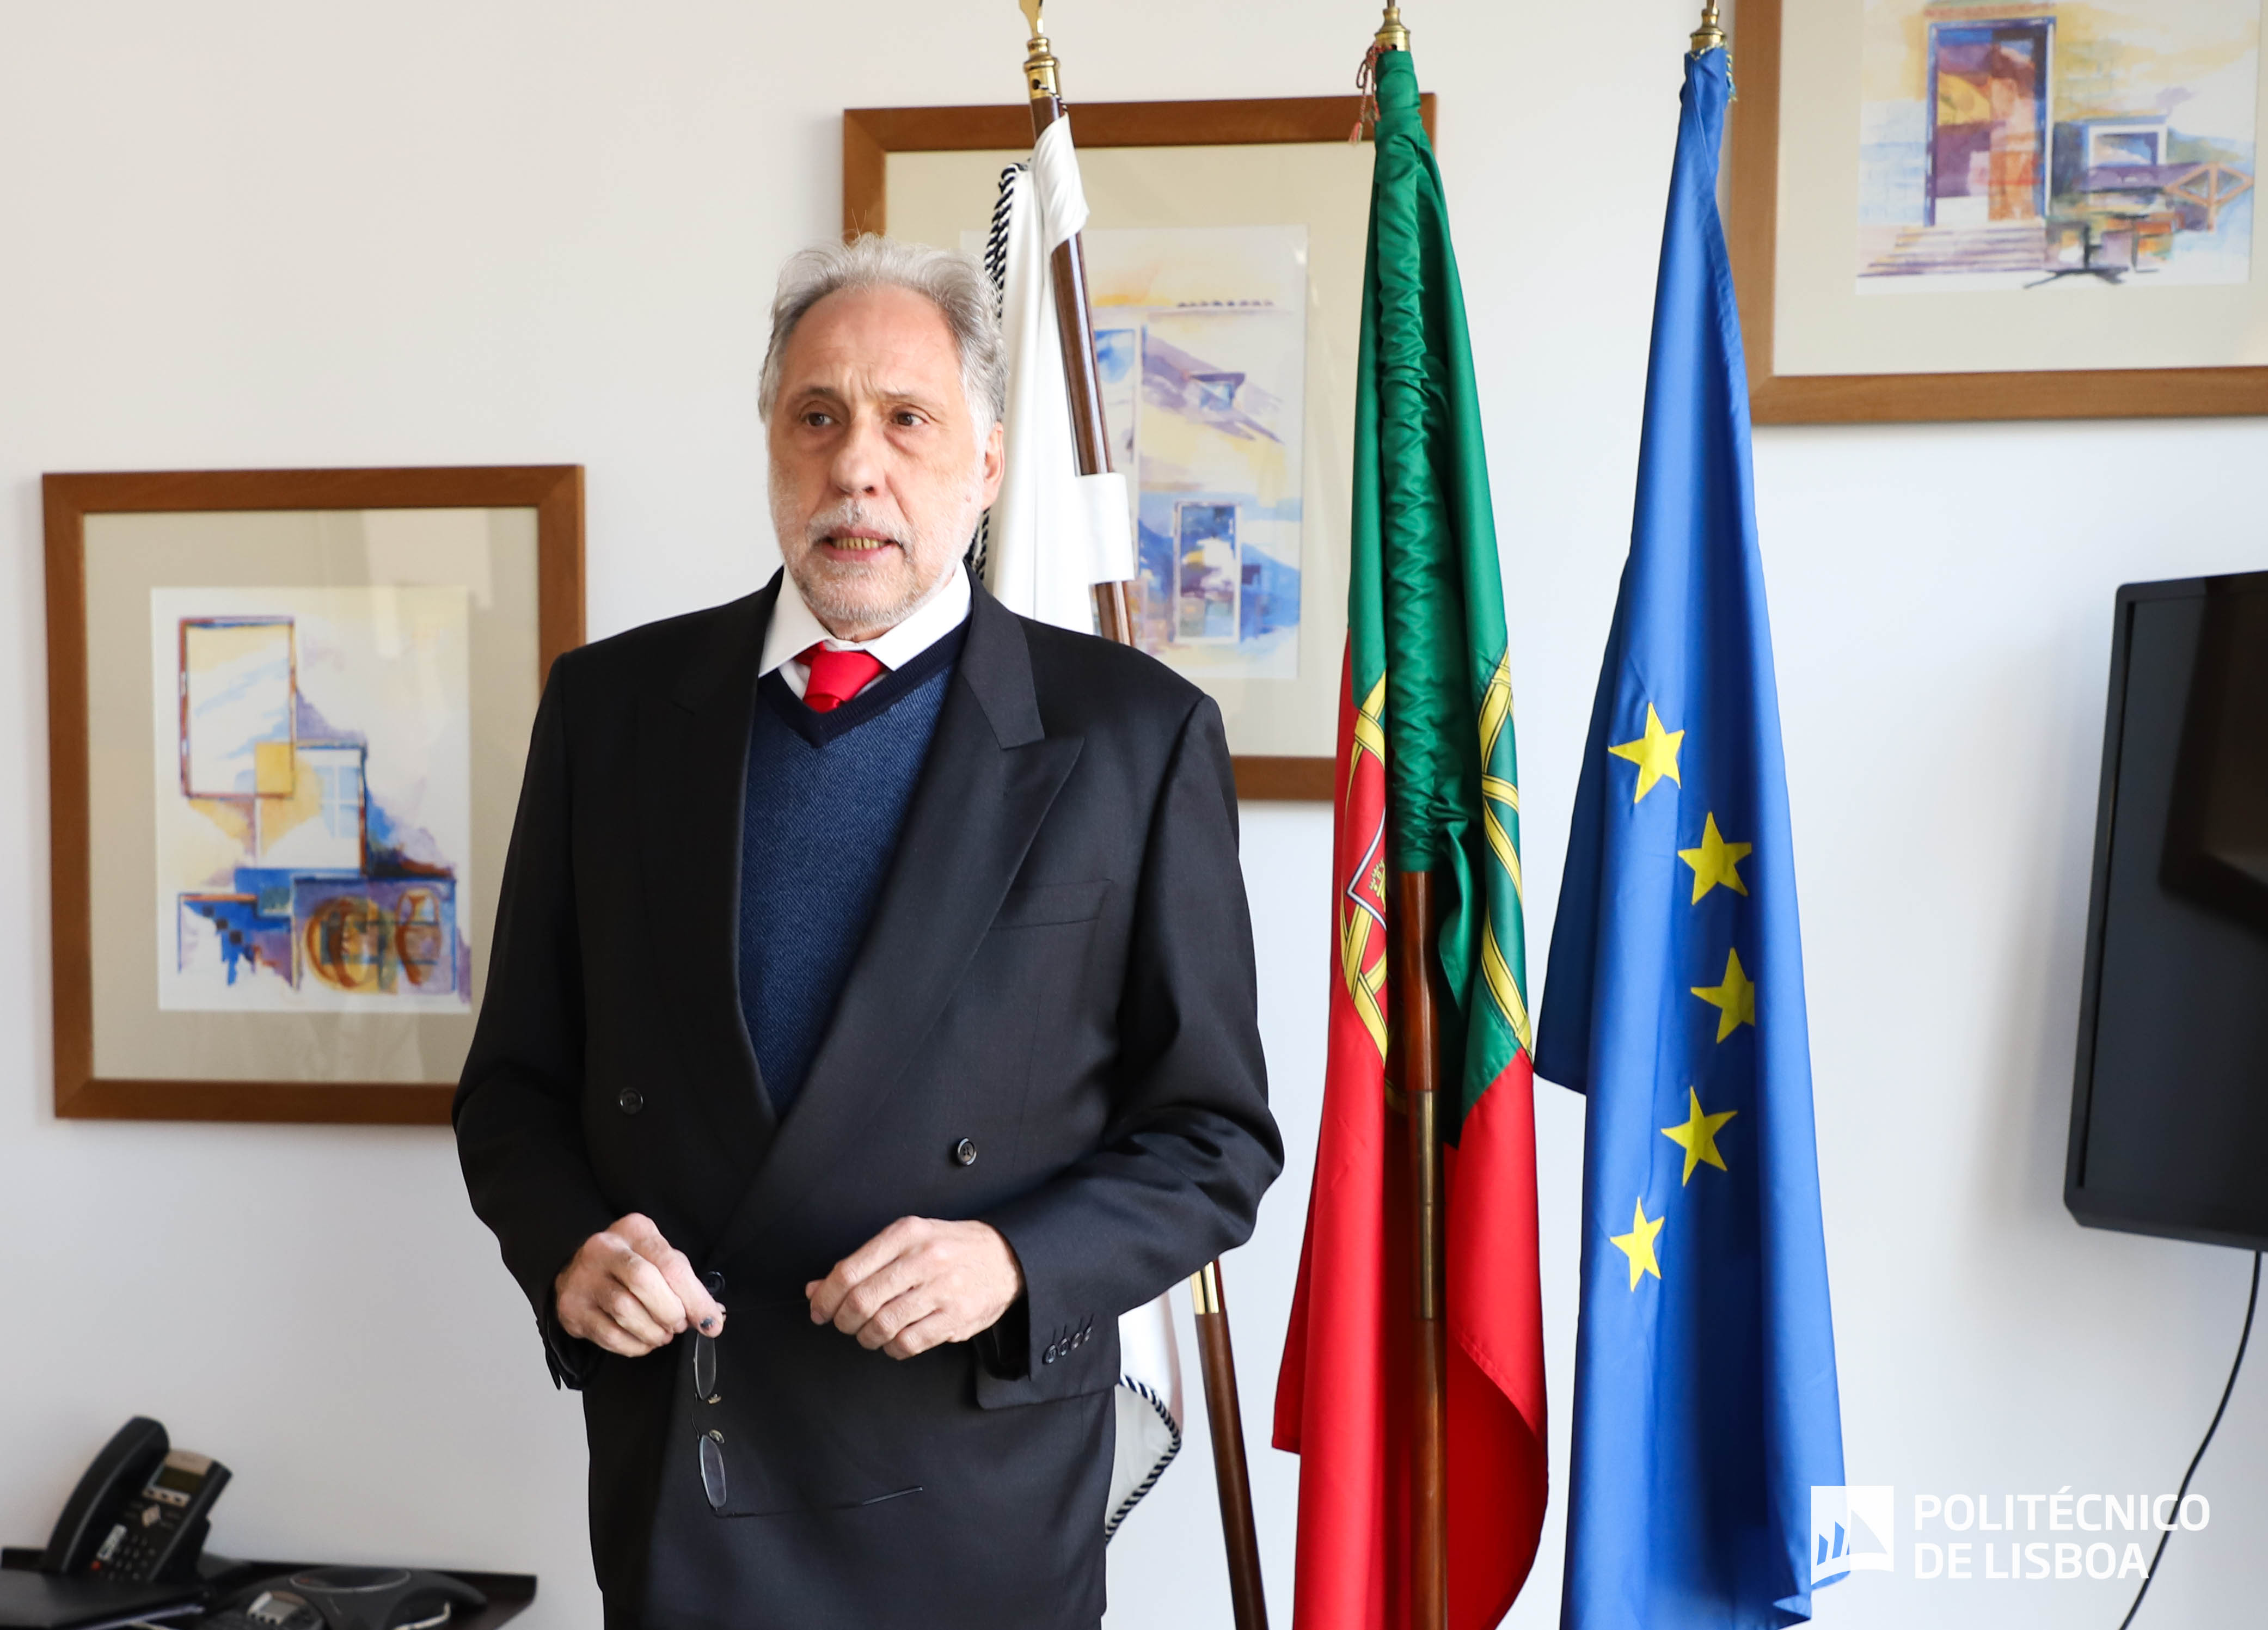 Presidente do Politécnico de Lisboa